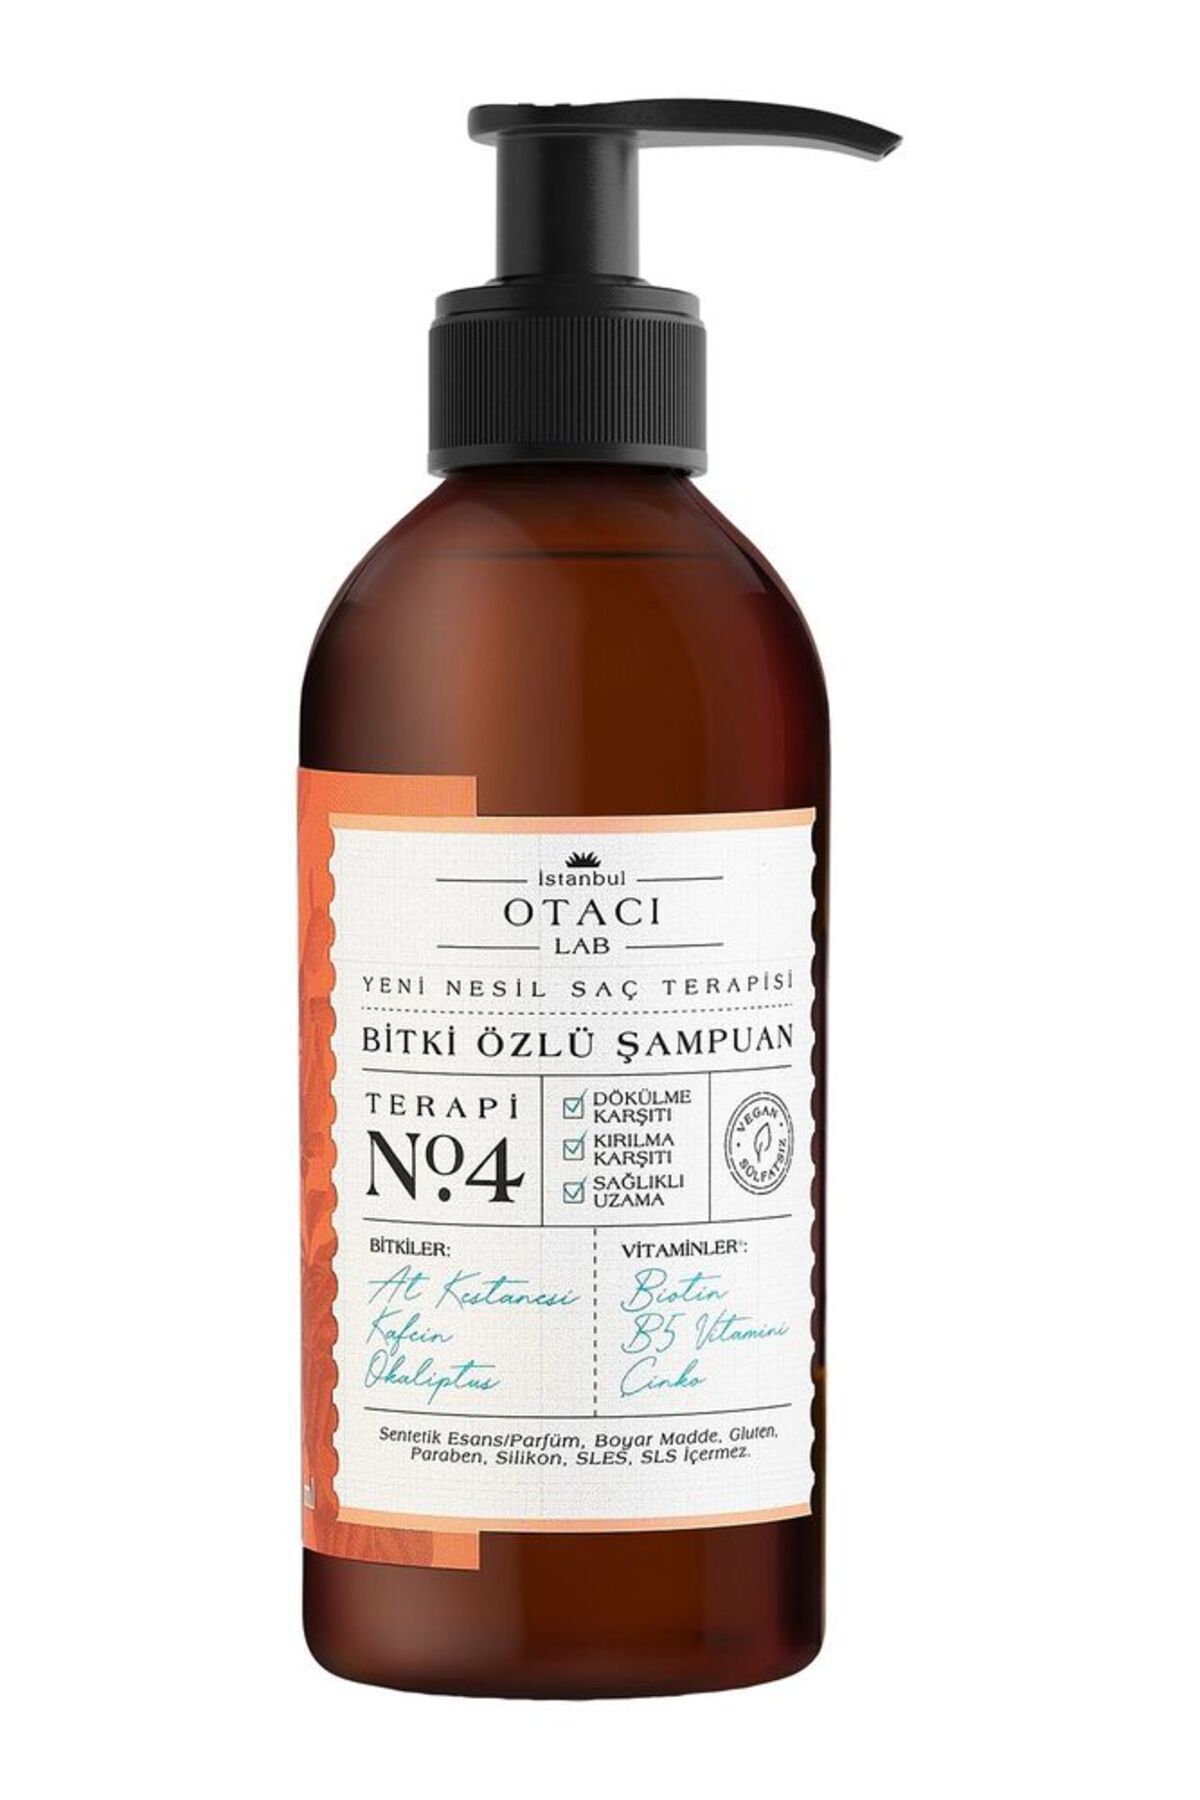 Otacı Lab Yeni Nesil Saç Terapisi Bitki Özlü Şampuan Terapi No:4